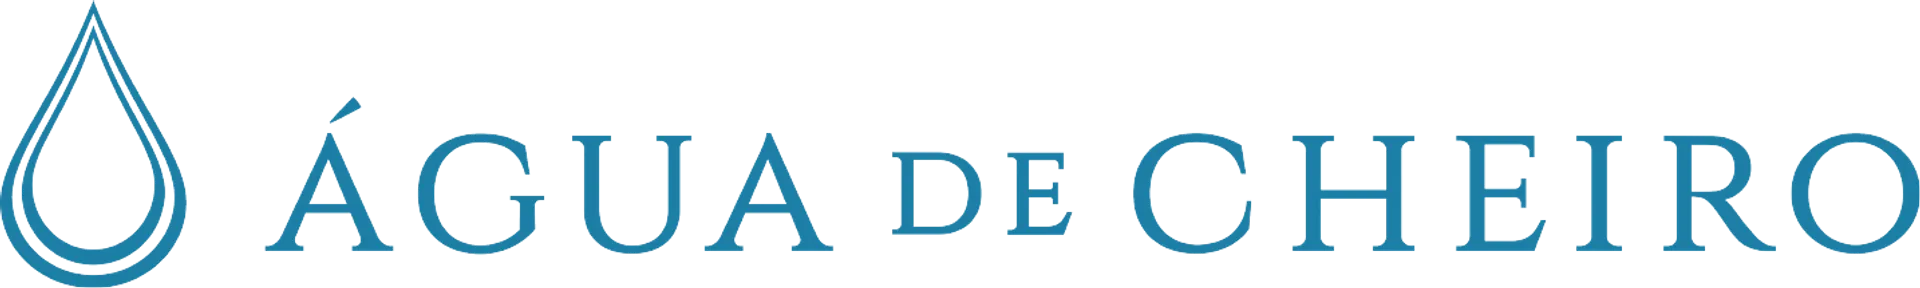 ÁGUA DE CHEIRO logo